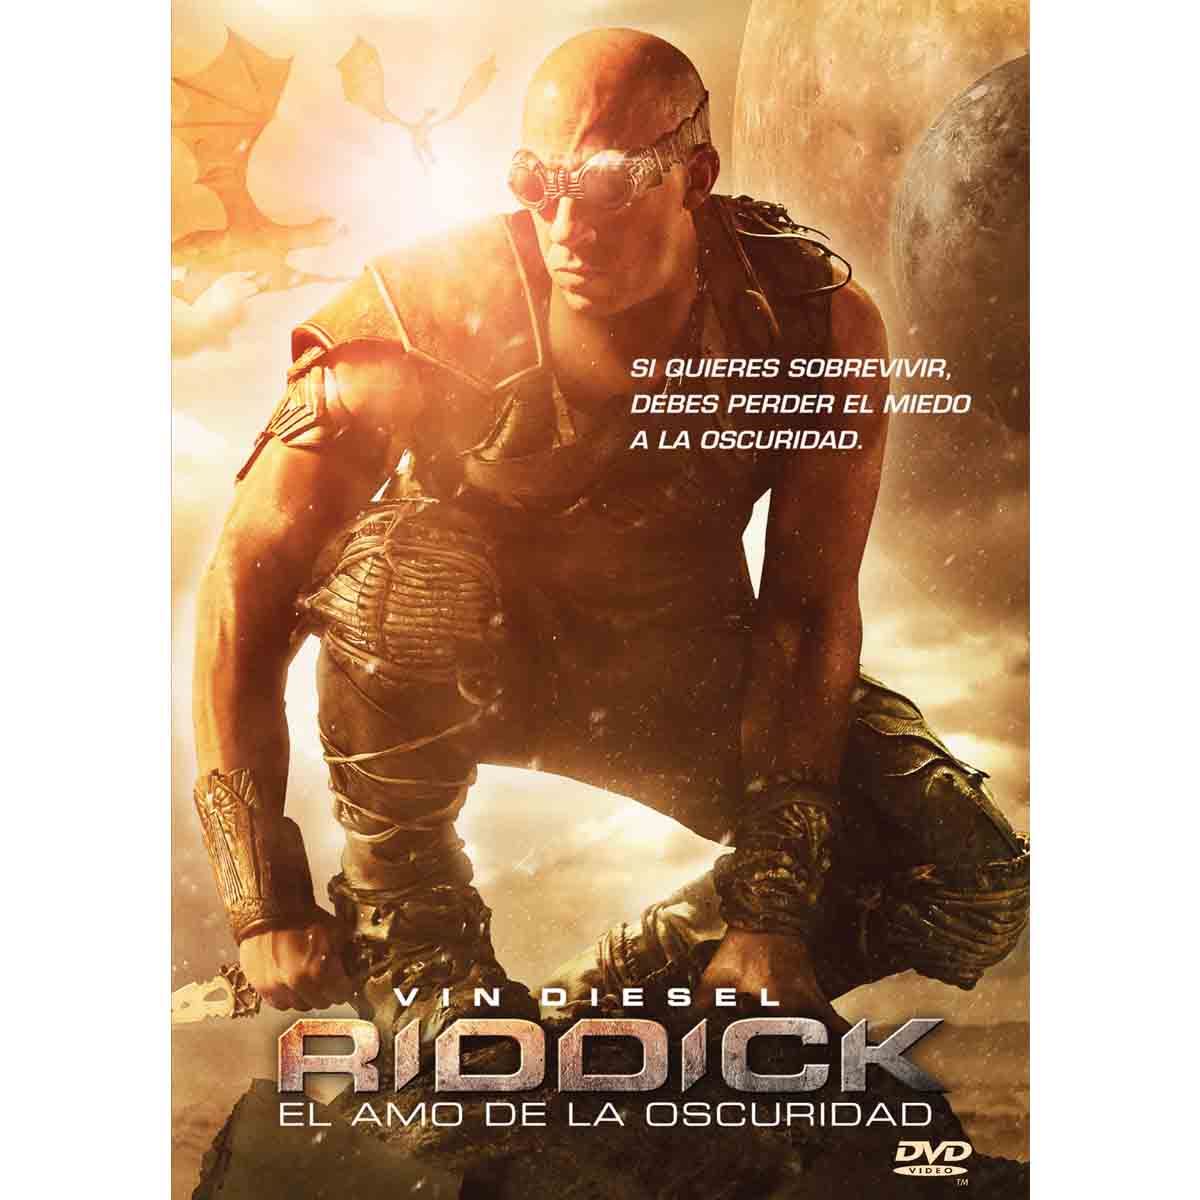 DVD Riddick; El Amo De La Oscuridad